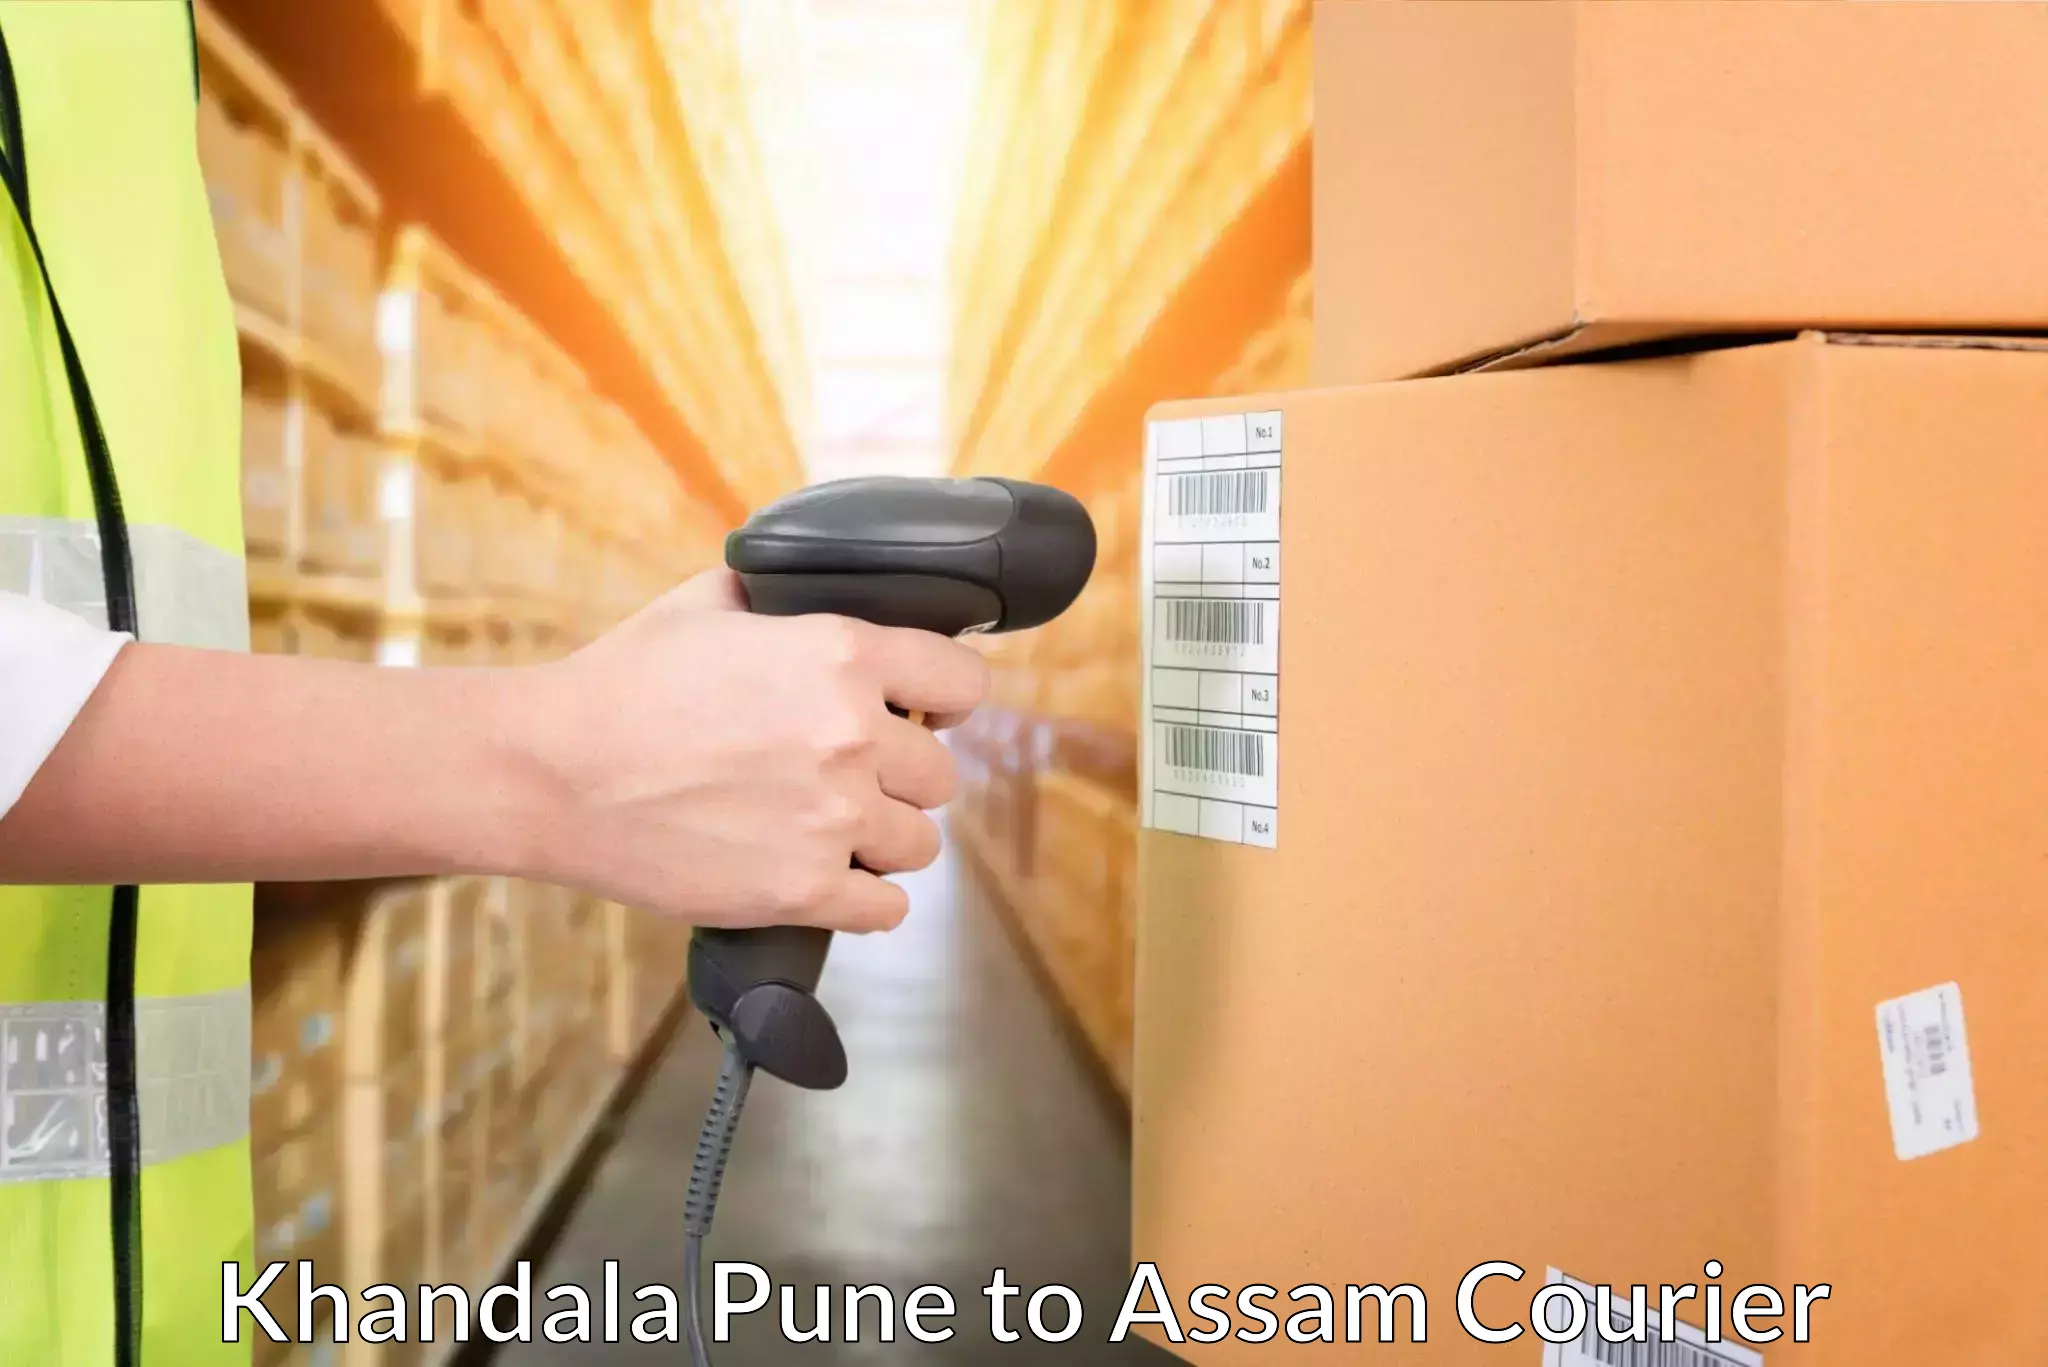 Efficient freight service Khandala Pune to Udalguri